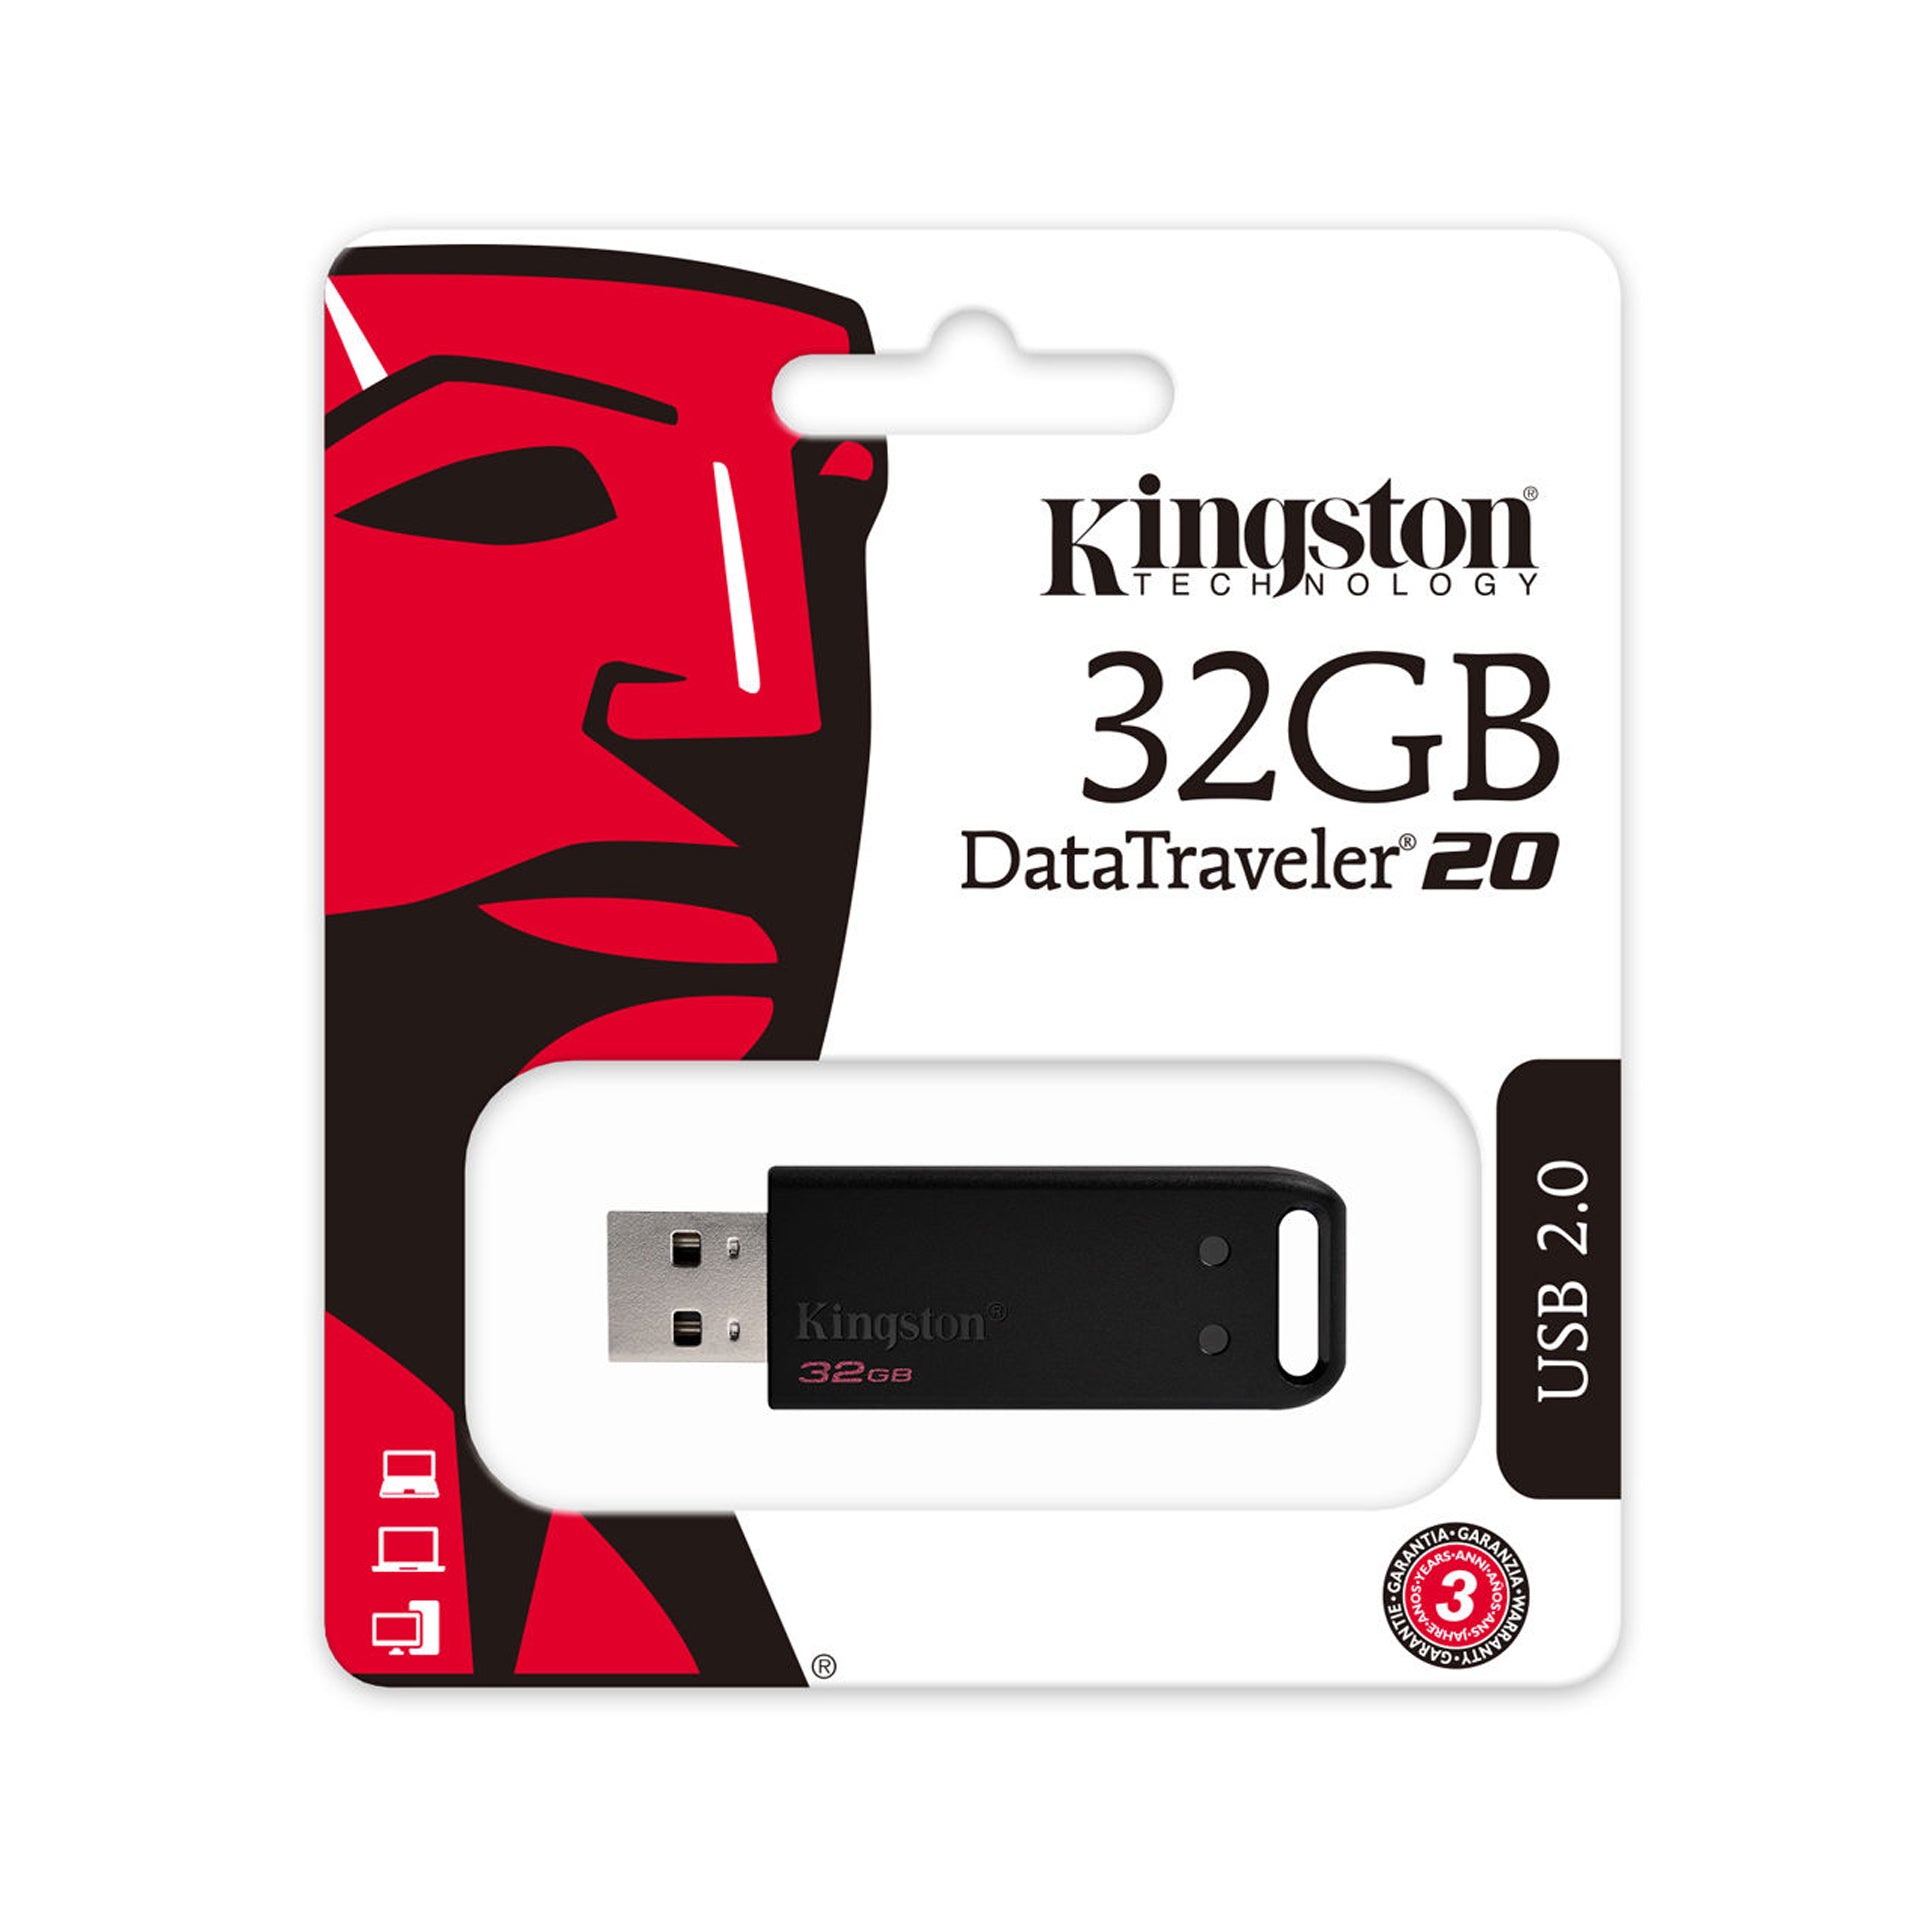 Kingston 32 GB DataTraveler 20 USB 2.0